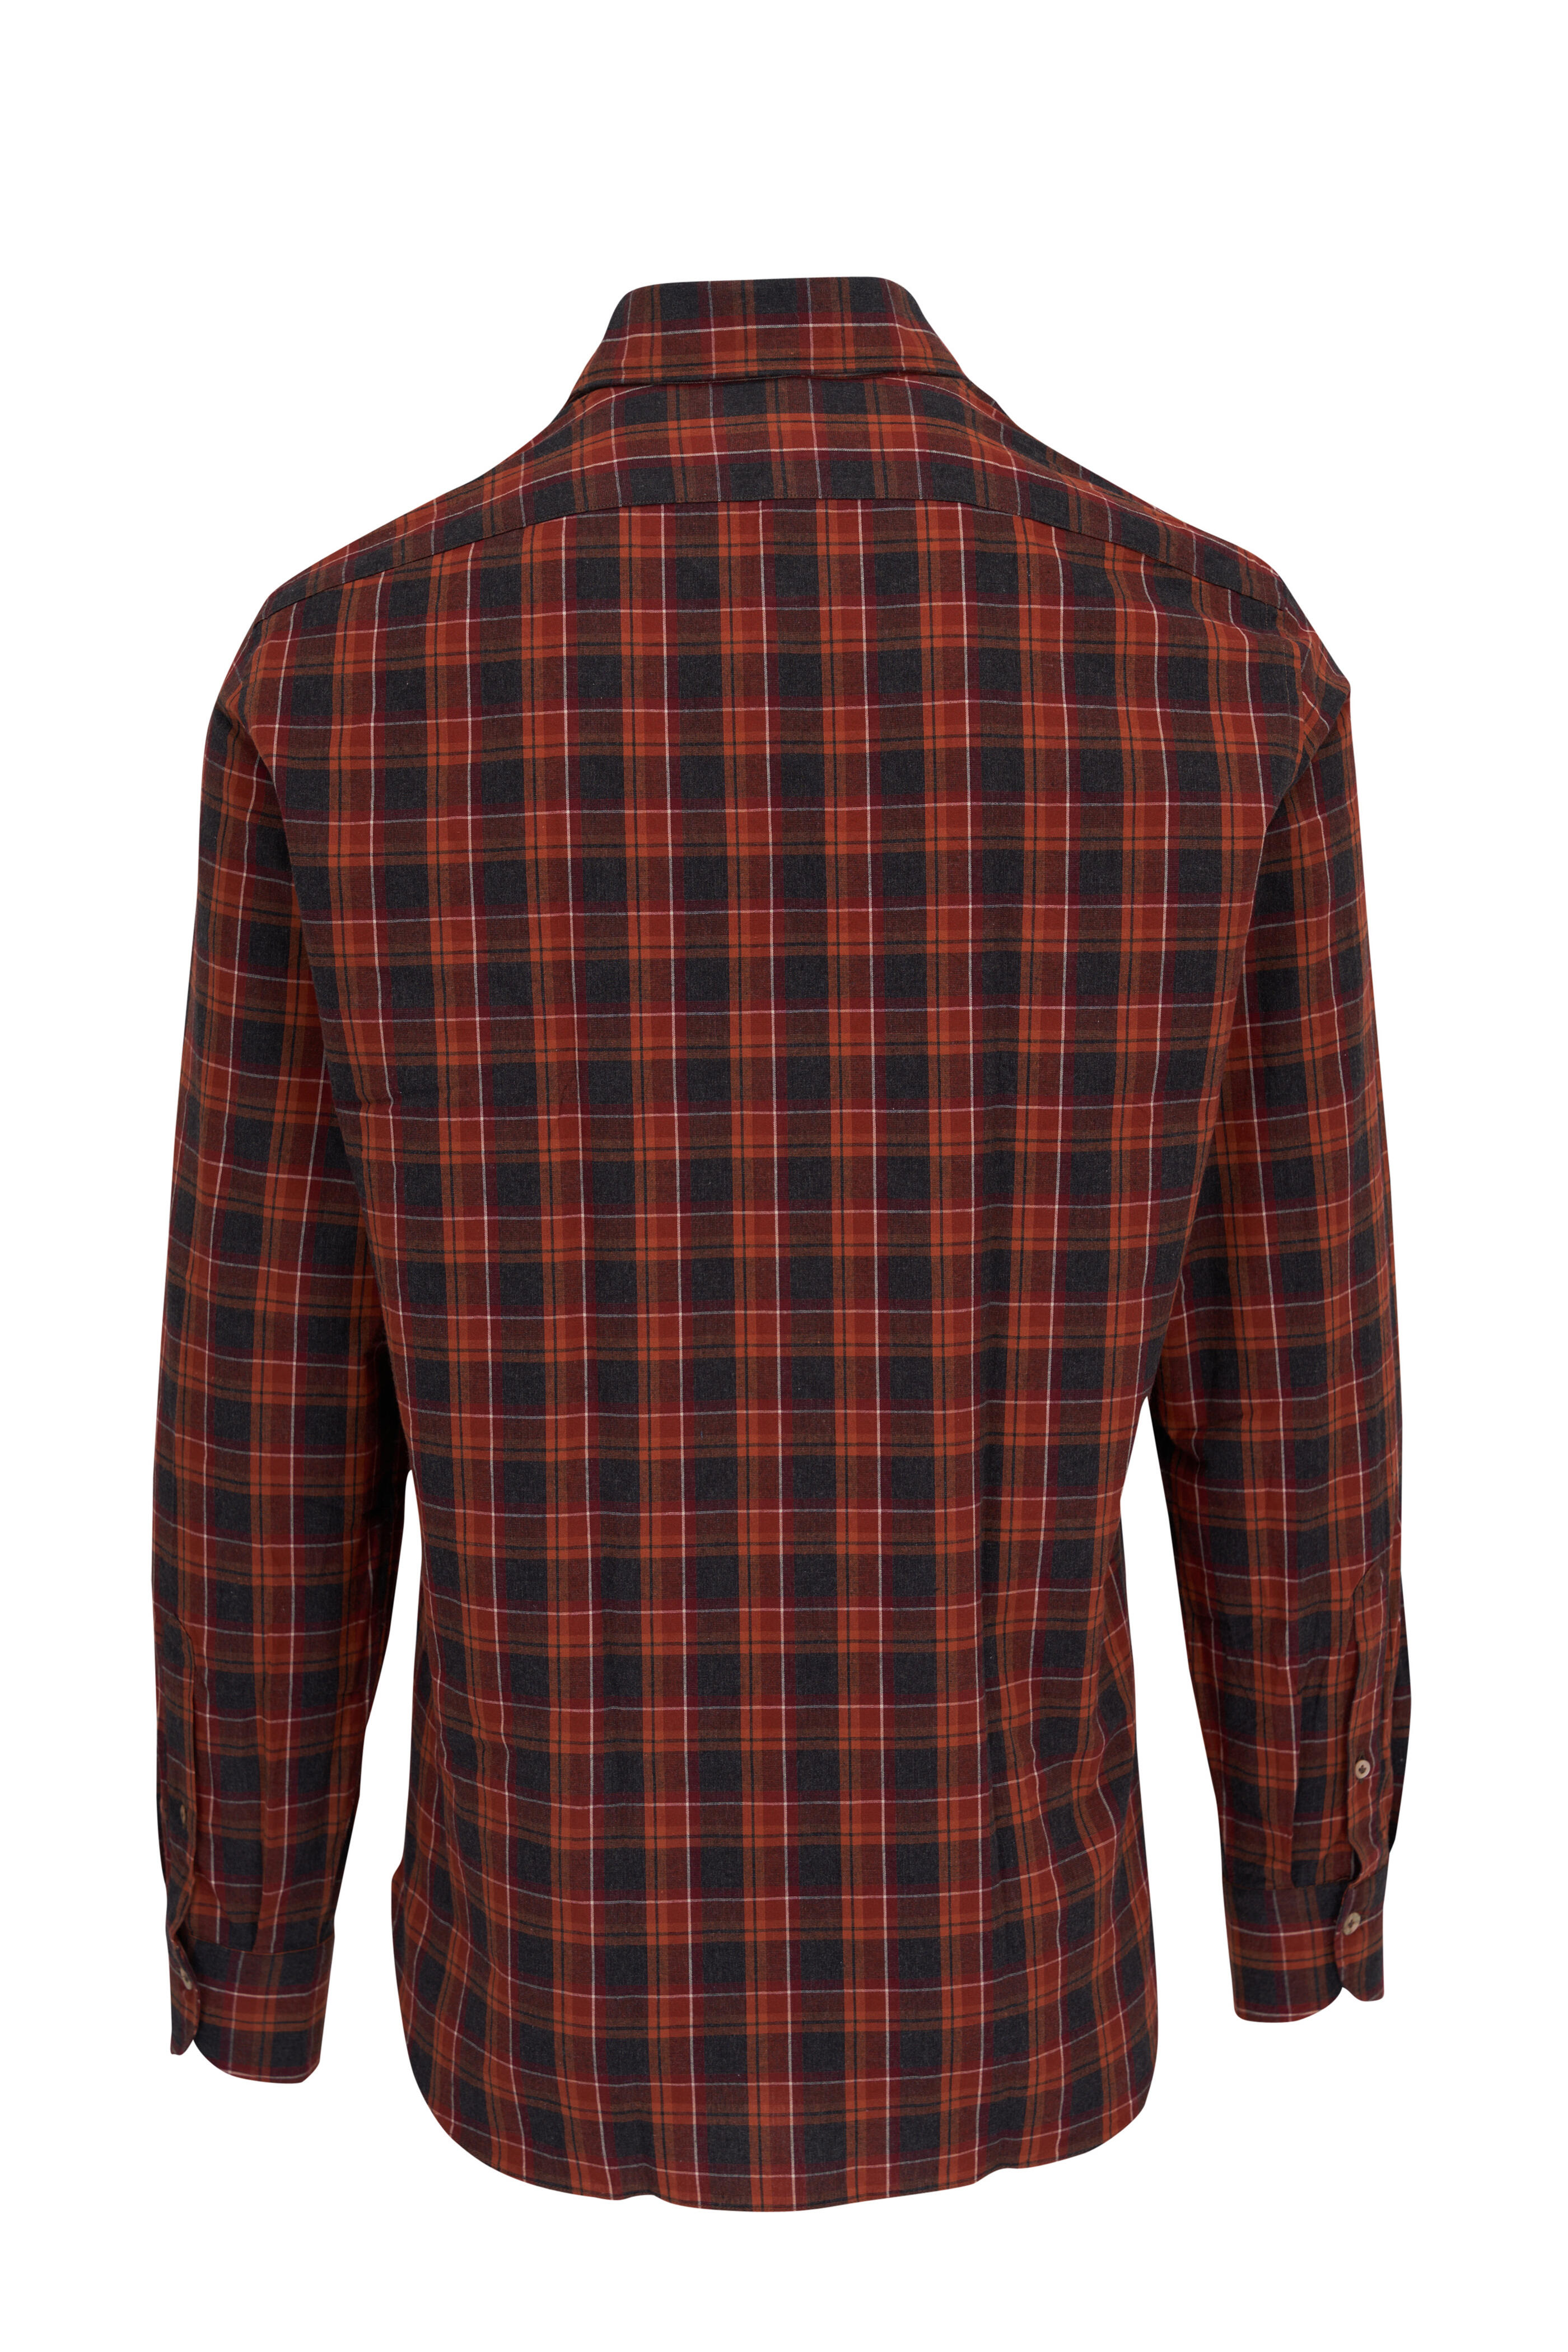 Giannetto - Orange Multi Check Cotton Sport Shirt